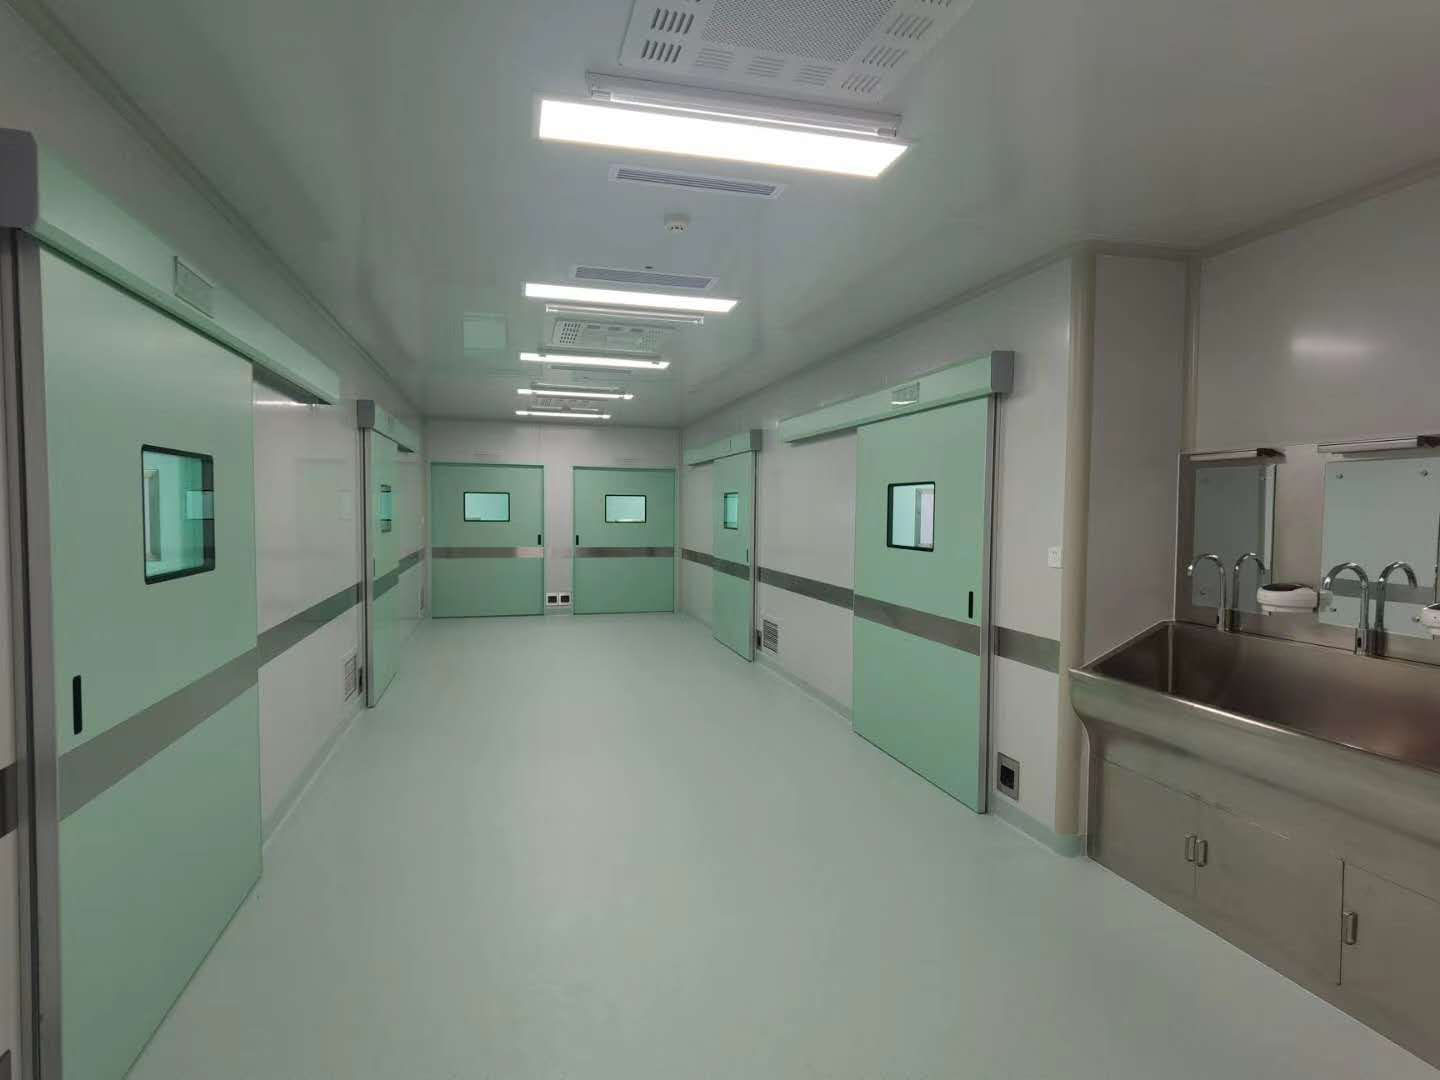 Hospitali ya Sita ya Watu ya Shenyang